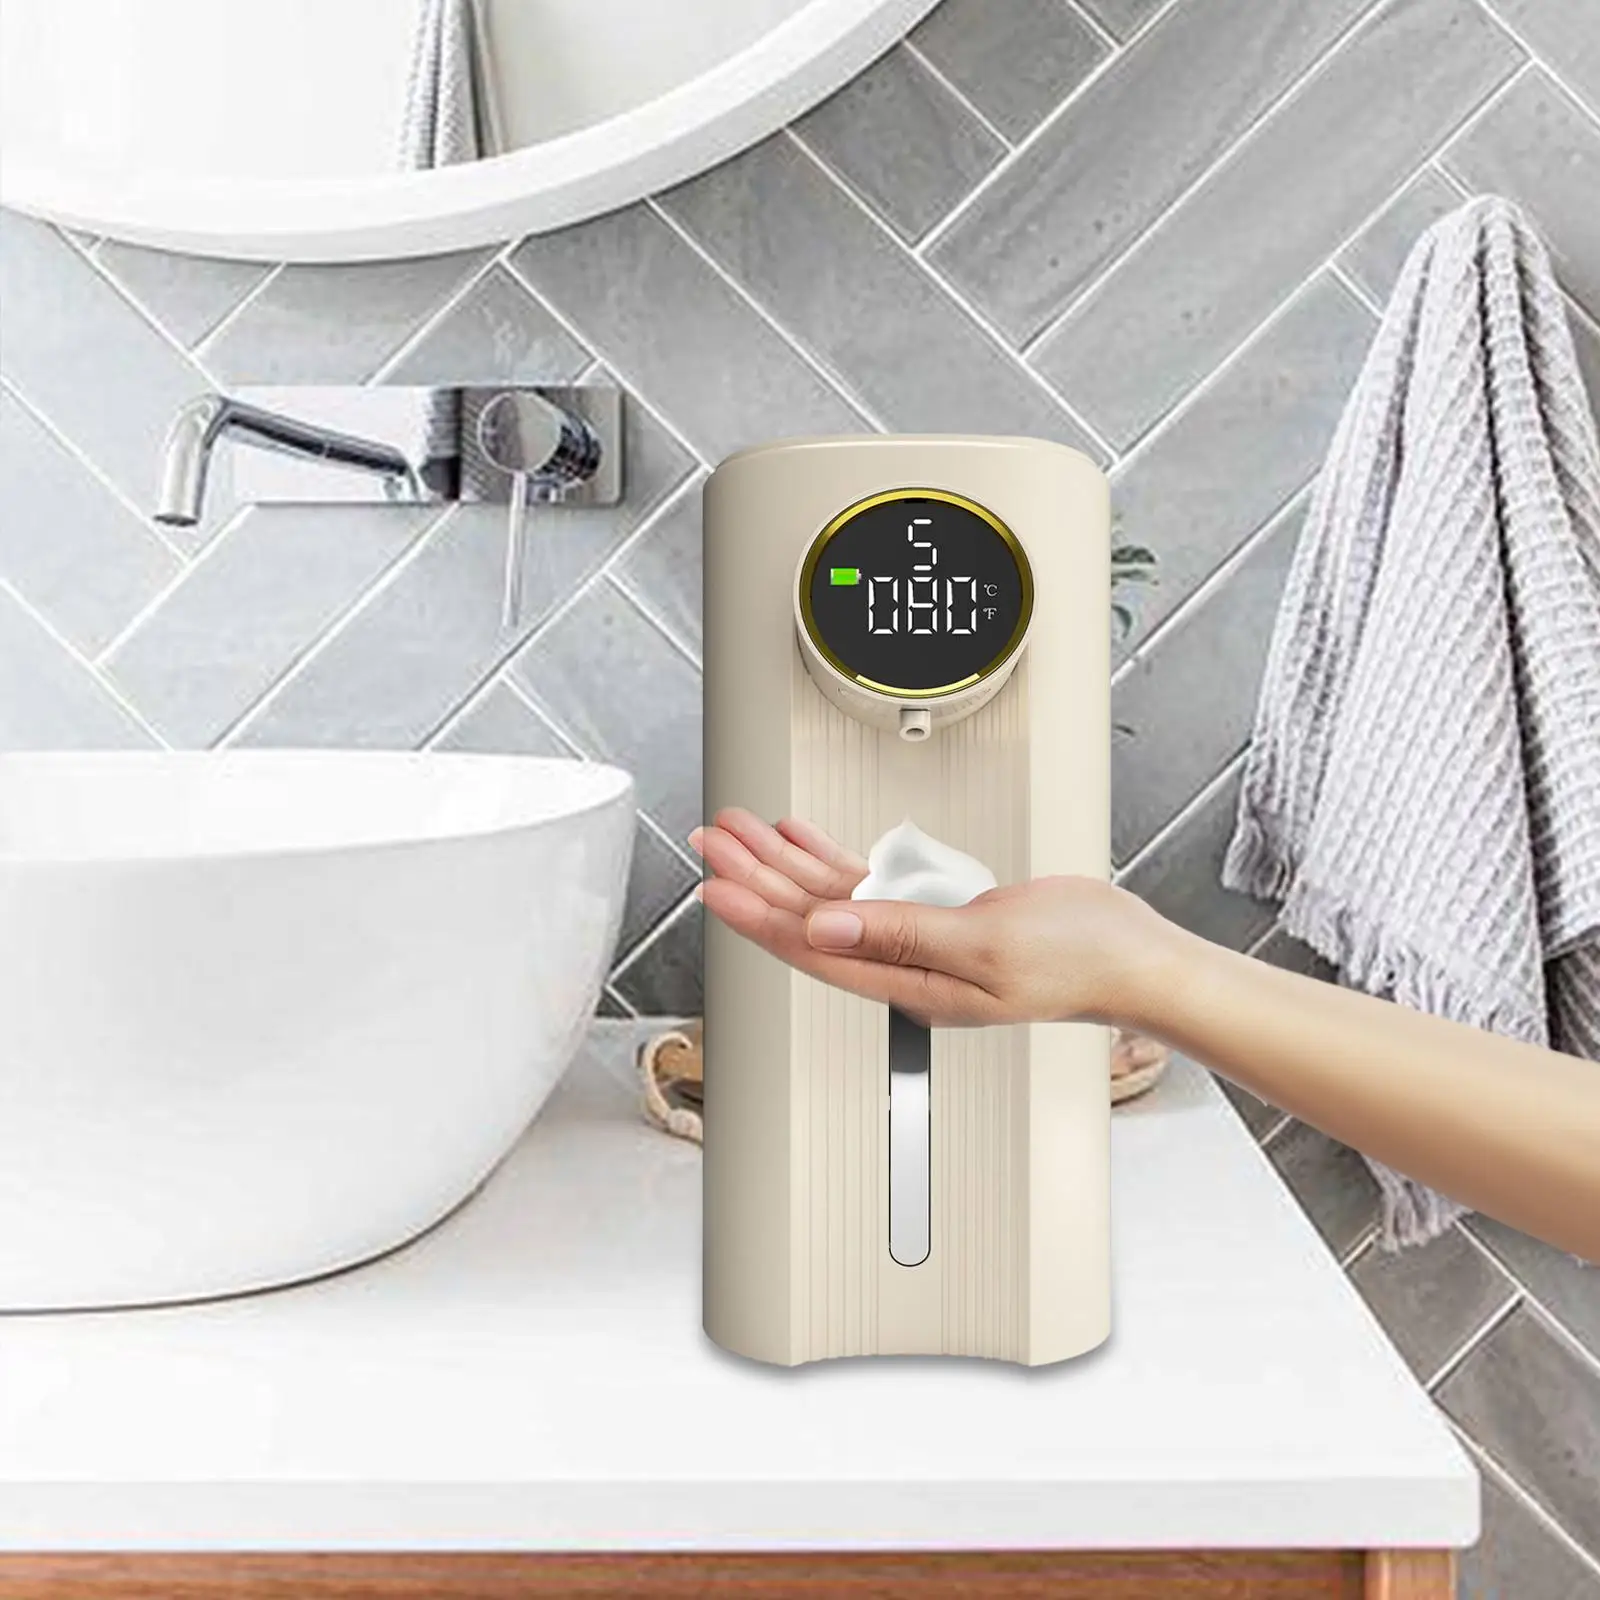 Automatic Soap Dispenser Portable Facial Cleaner Dish Soap Dispenser for Household Hotel Restaurant Shower Preschool Children